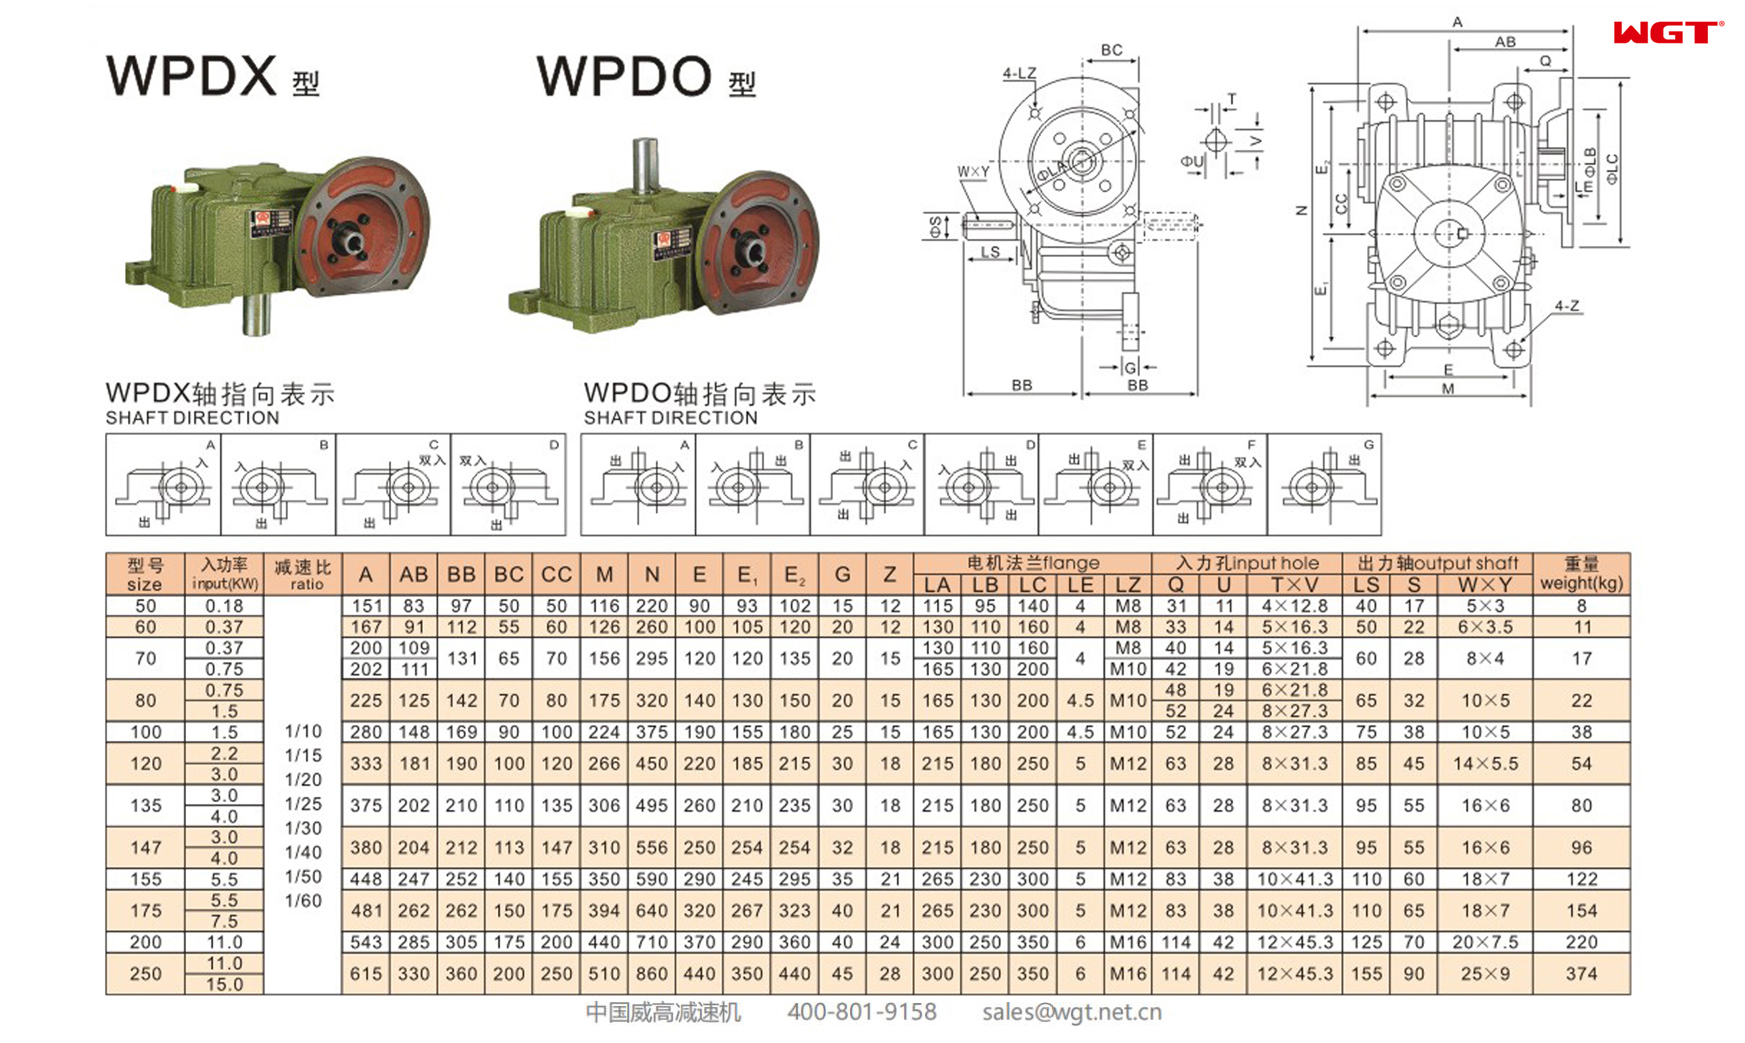 WPDO120 Червячный редуктор Односкоростной редуктор